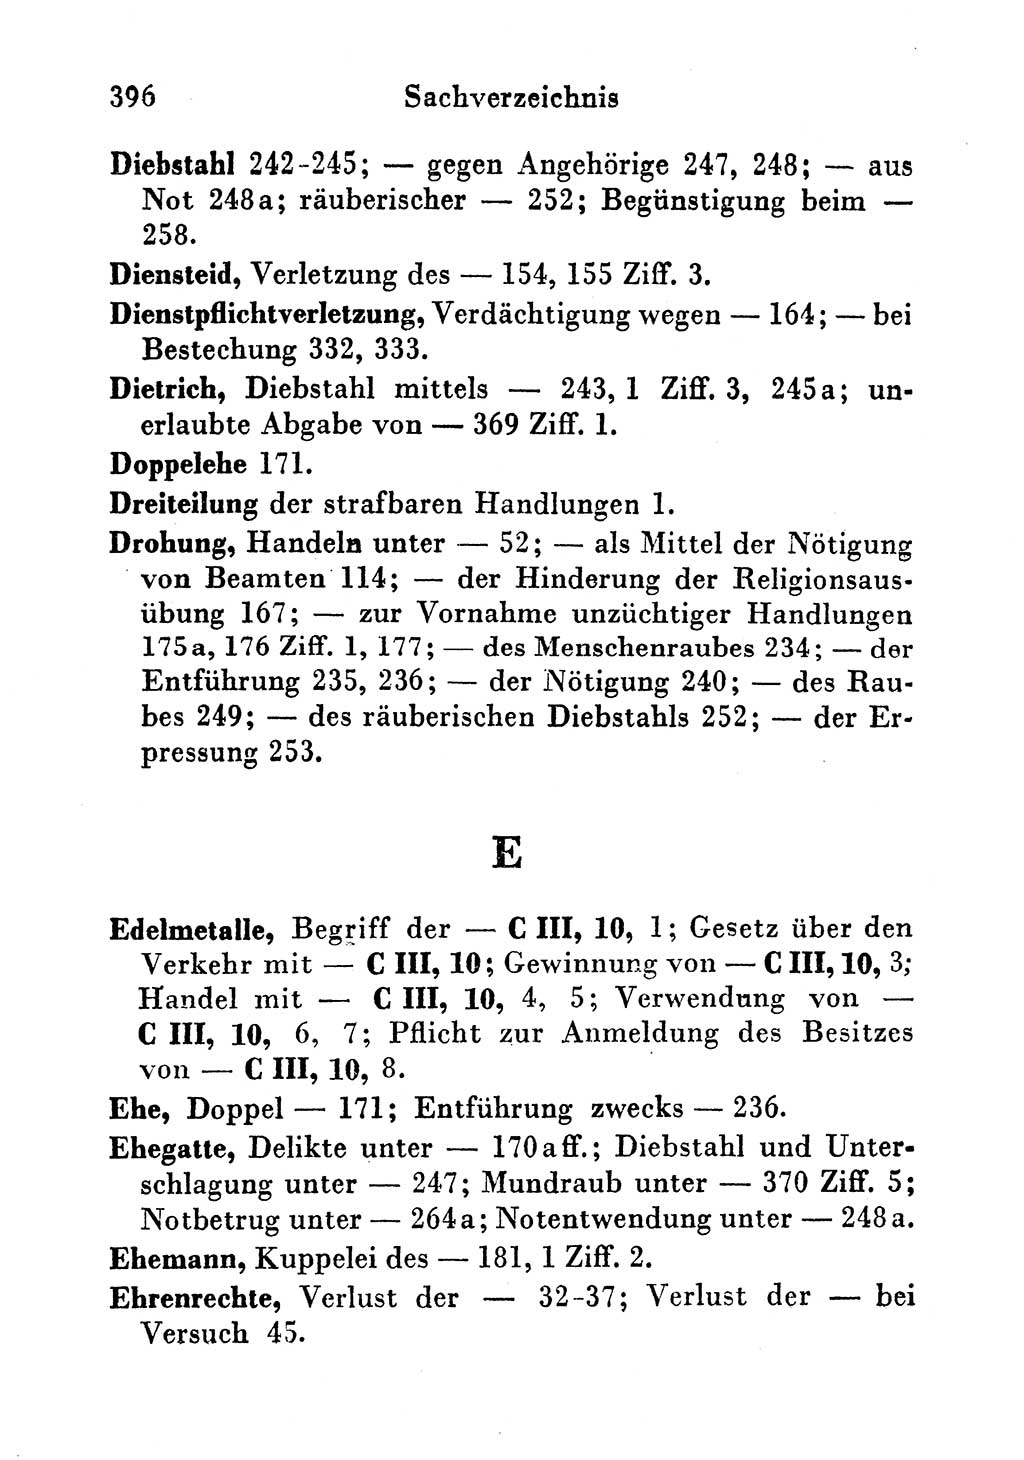 Strafgesetzbuch (StGB) und andere Strafgesetze [Deutsche Demokratische Republik (DDR)] 1956, Seite 396 (StGB Strafges. DDR 1956, S. 396)